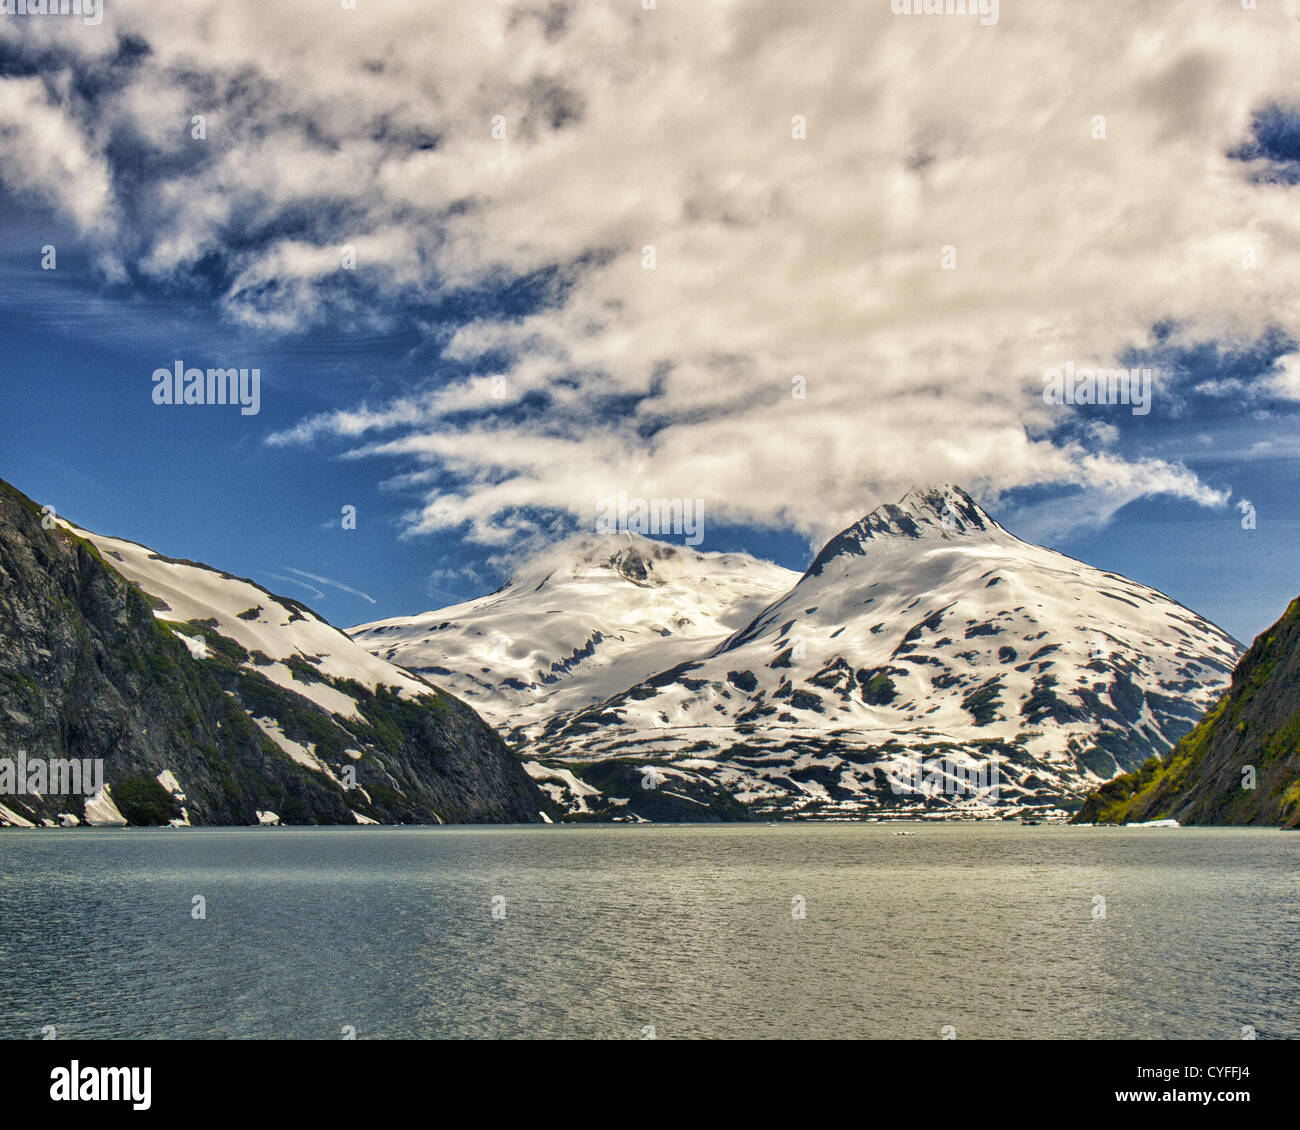 Junio 29, 2012 - Península Kenai, Alaska, EE.UU. - el hermoso Lago de Portage y sus alrededores, picos nevados de las montañas Chugach están en la Península Kenai dentro del Bosque Nacional Chugach. El lago fue creado detrás de la Morrena terminal del Glaciar Portage como comenzó a disminuir. Los terminus del glaciar ha retrocedido casi 5 kilómetros hasta su ubicación actual. Lago y Glaciar Portage es la atracción turística más visitada en Alaska. (Crédito de la Imagen: © Arnold Drapkin/ZUMAPRESS.com) Foto de stock